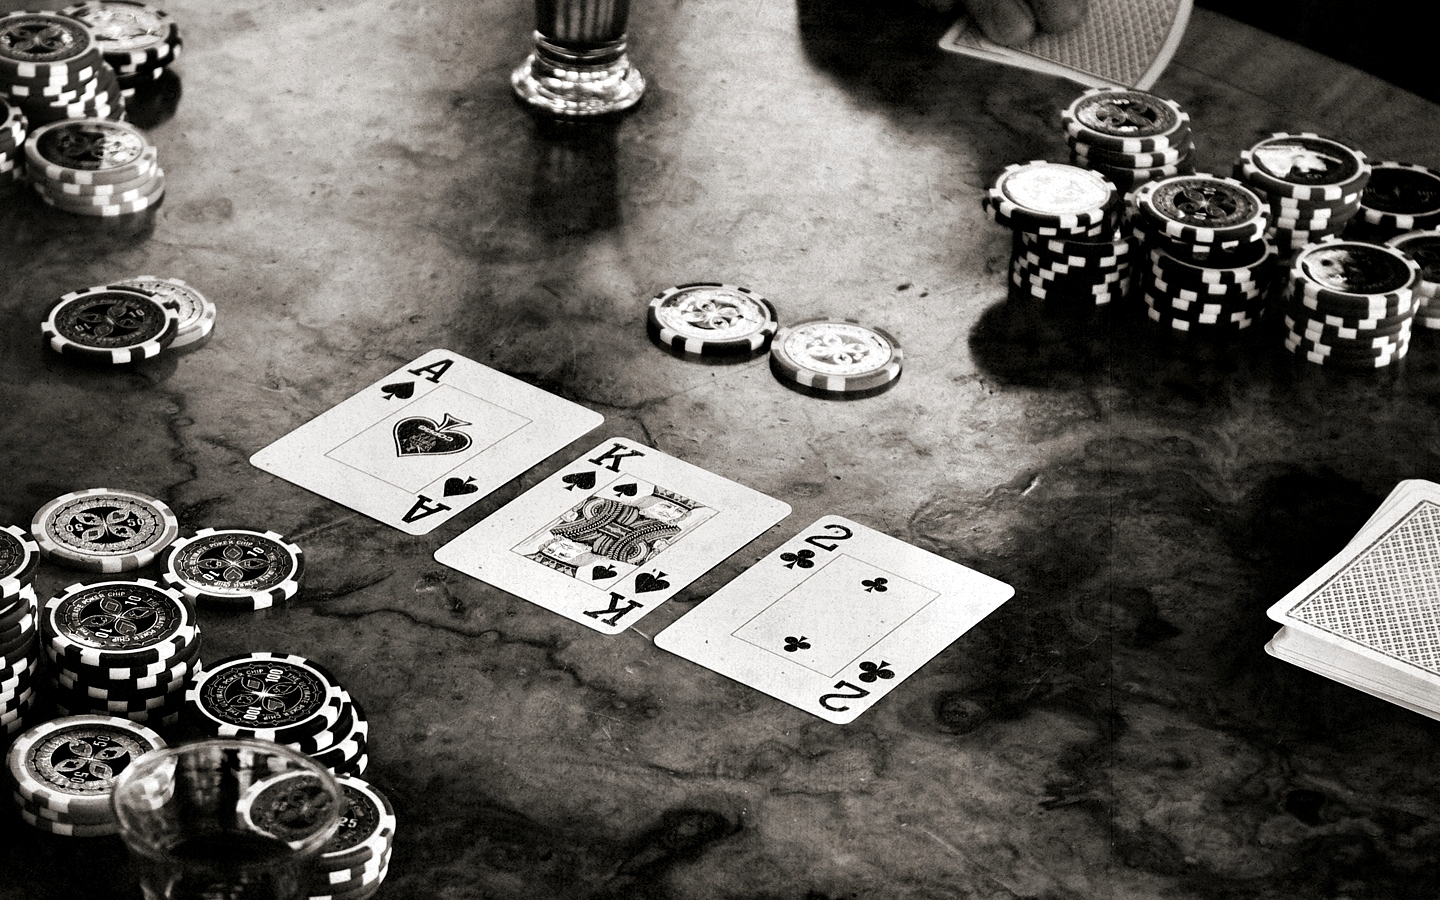 Что следует сделать для организации процесса игры на очки или деньги в покер-рум